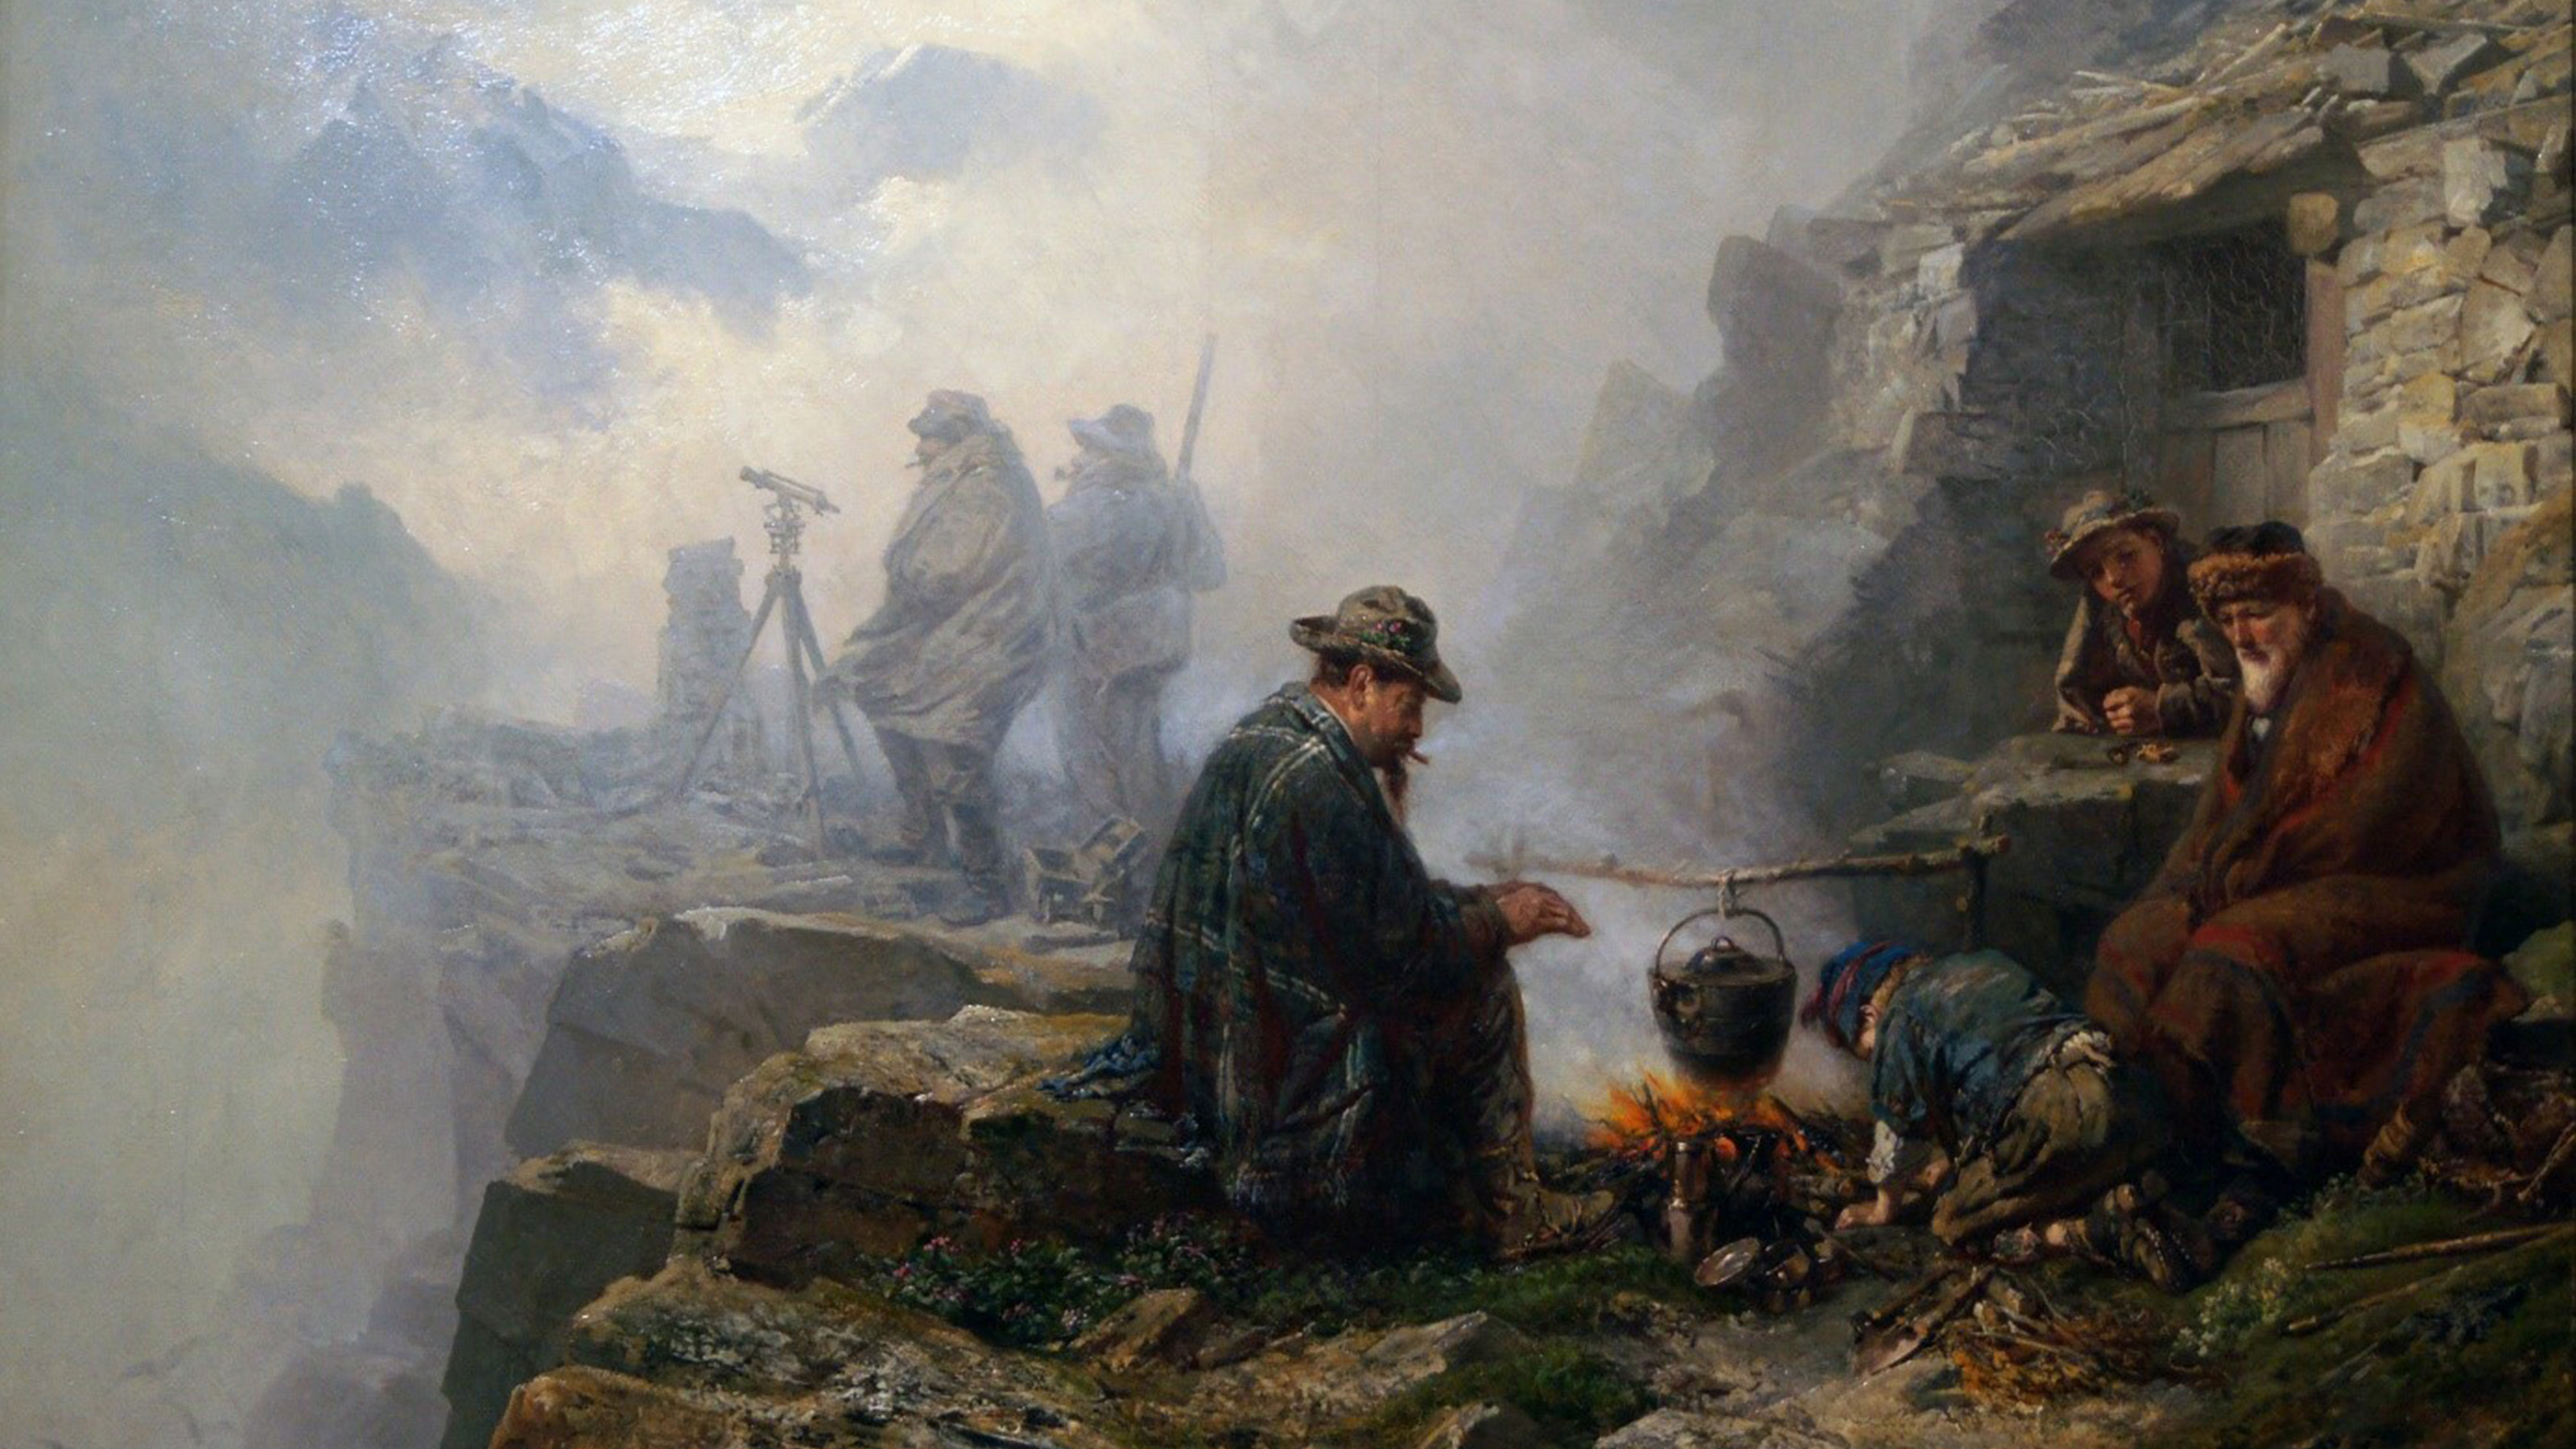 Le tableau montre quatre personnes réunies autour d'un feu de camp dans un terrain montagneux. En arrière-plan, deux hommes se tiennent derrière un théodolite dans le brouillard.